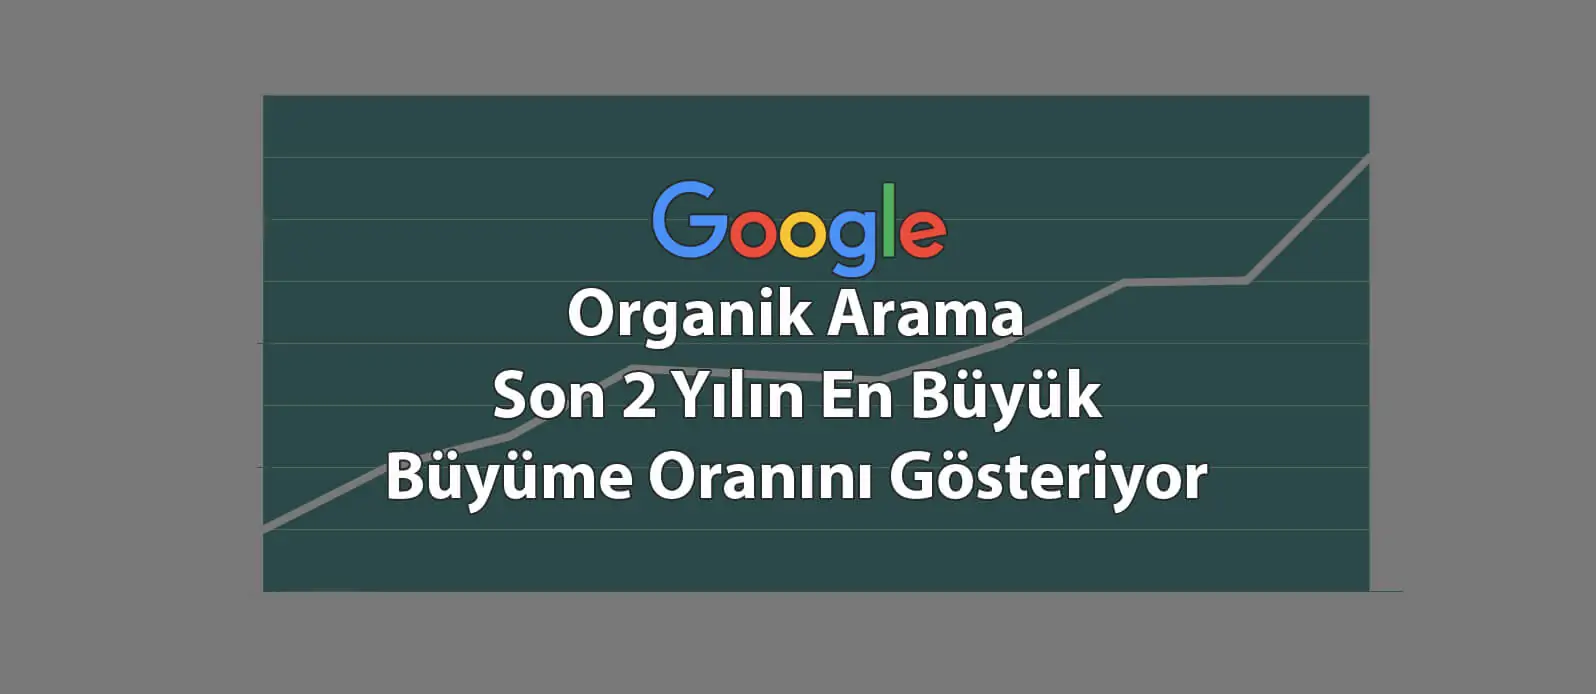 Google Organik Arama